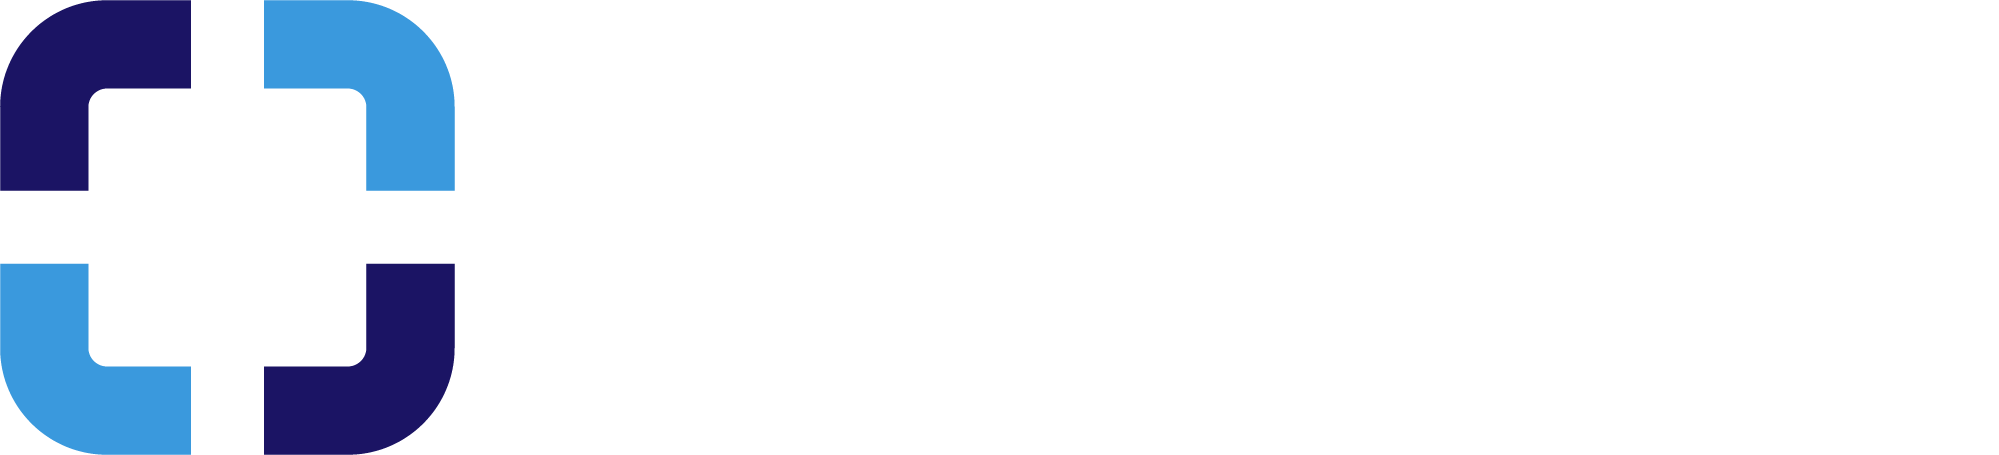 Karlosoft.com